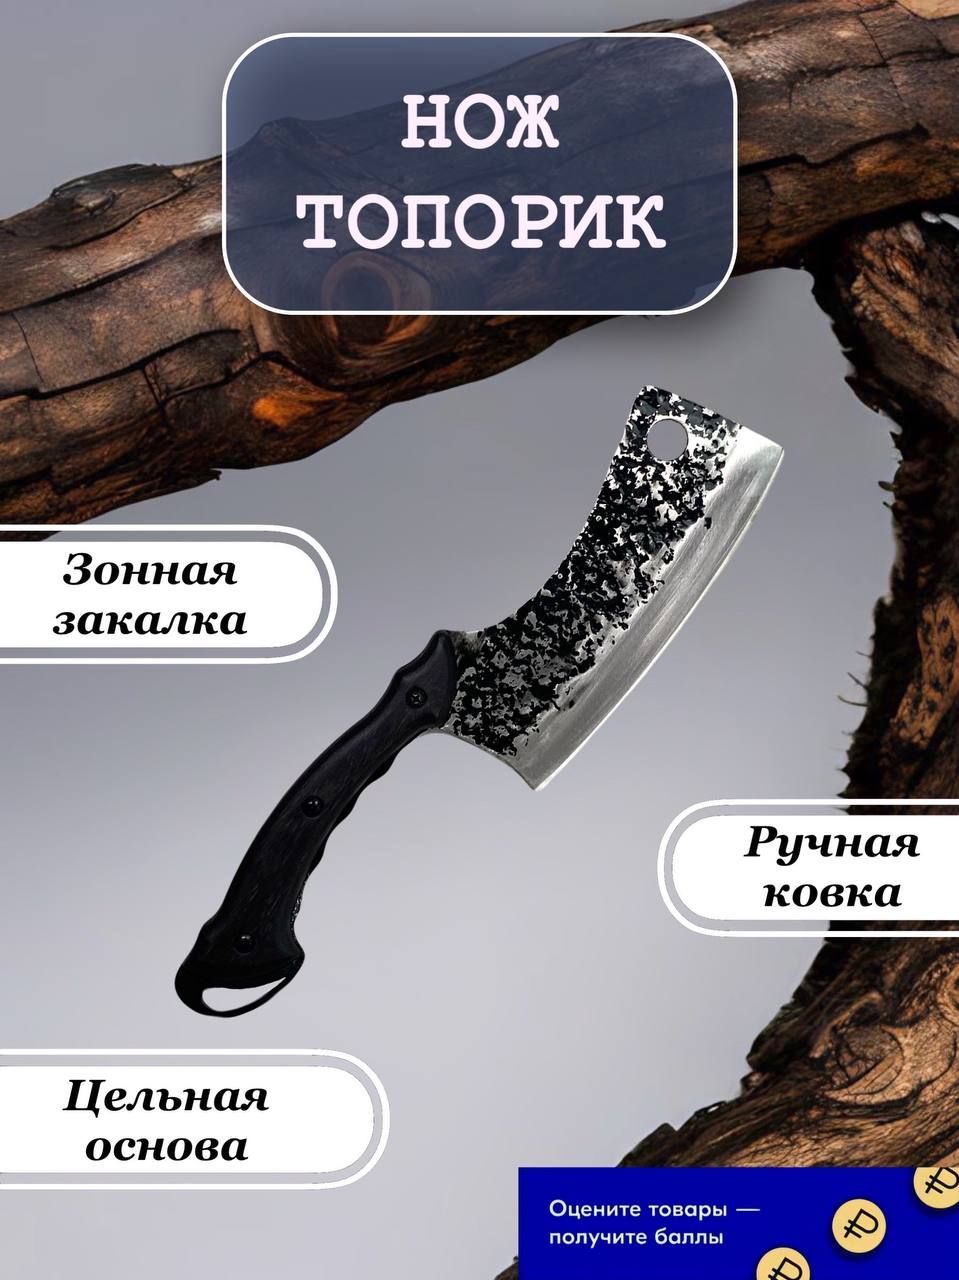 Нож топорик для рубки мяса Кашалот с чехлом из натуральной кожи.